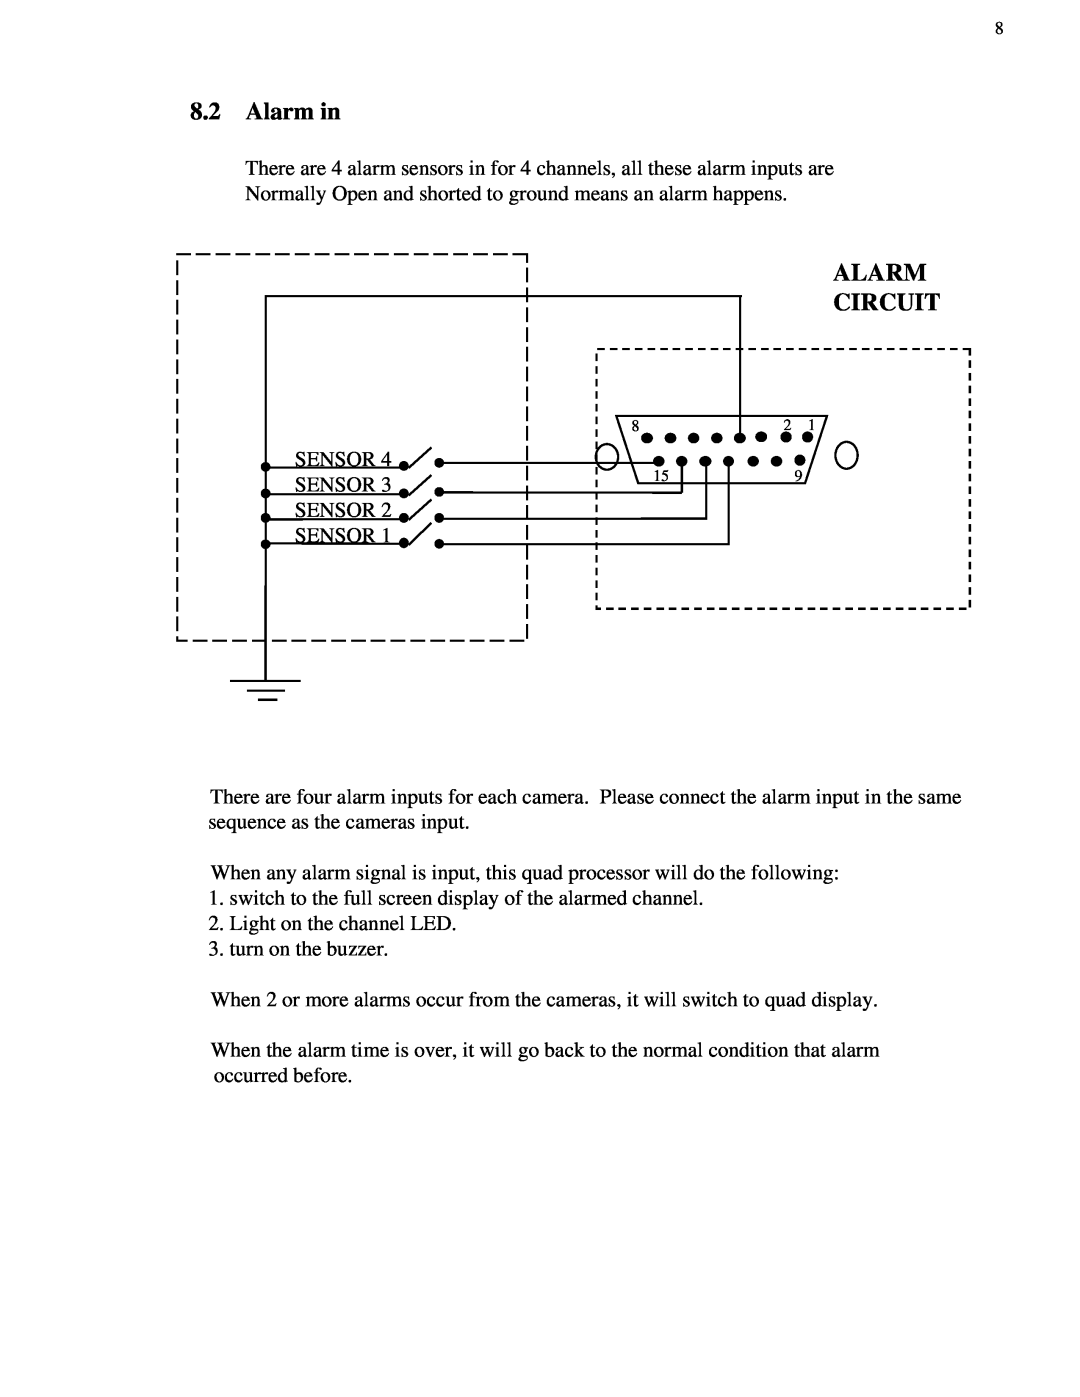 EverFocus 4BQ user manual 8.2Alarm in, Alarm Circuit 